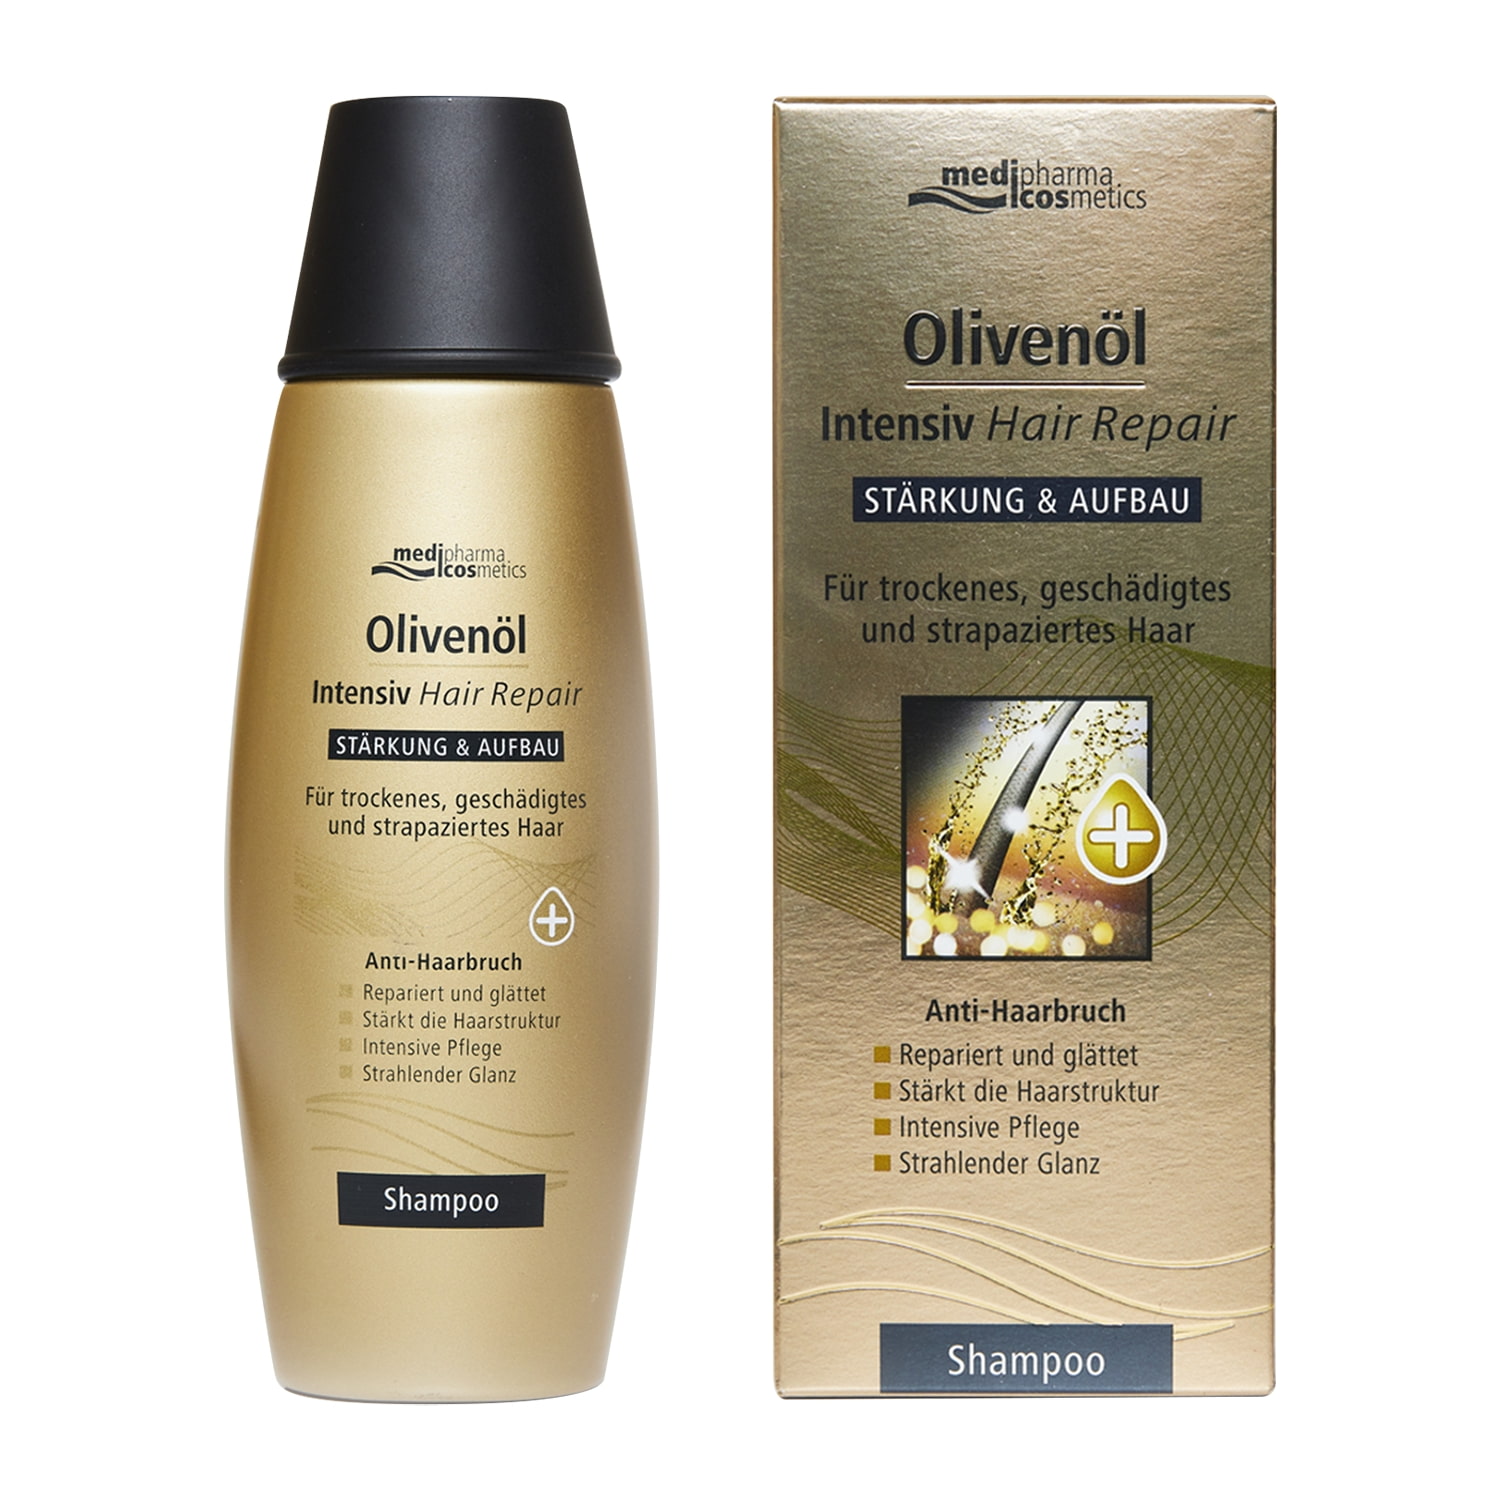 Medipharma Cosmetics Шампунь для восстановления волос Oliven